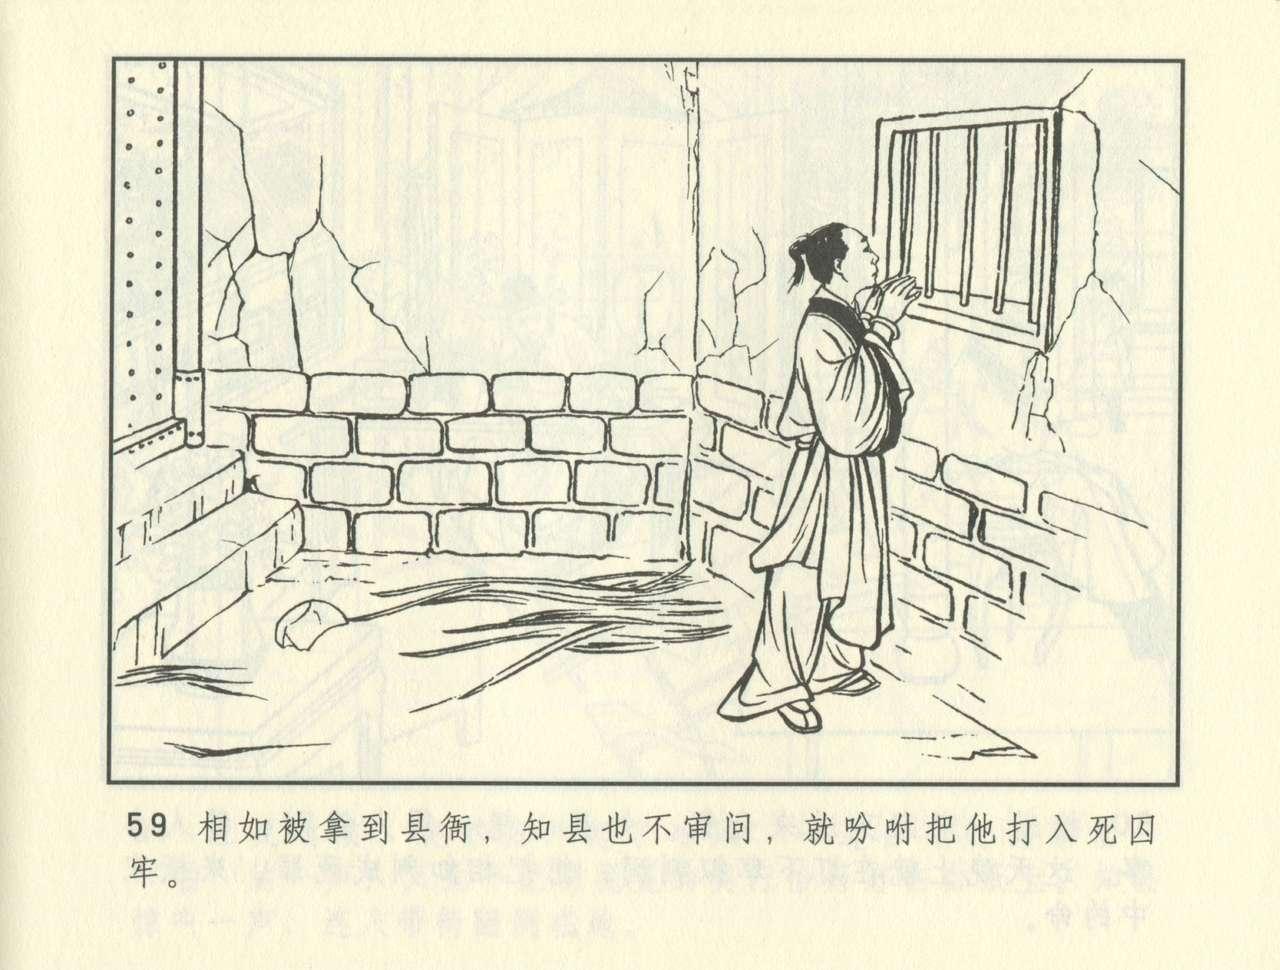 聊斋志异 张玮等绘 天津人民美术出版社 卷二十一 ~ 三十 399